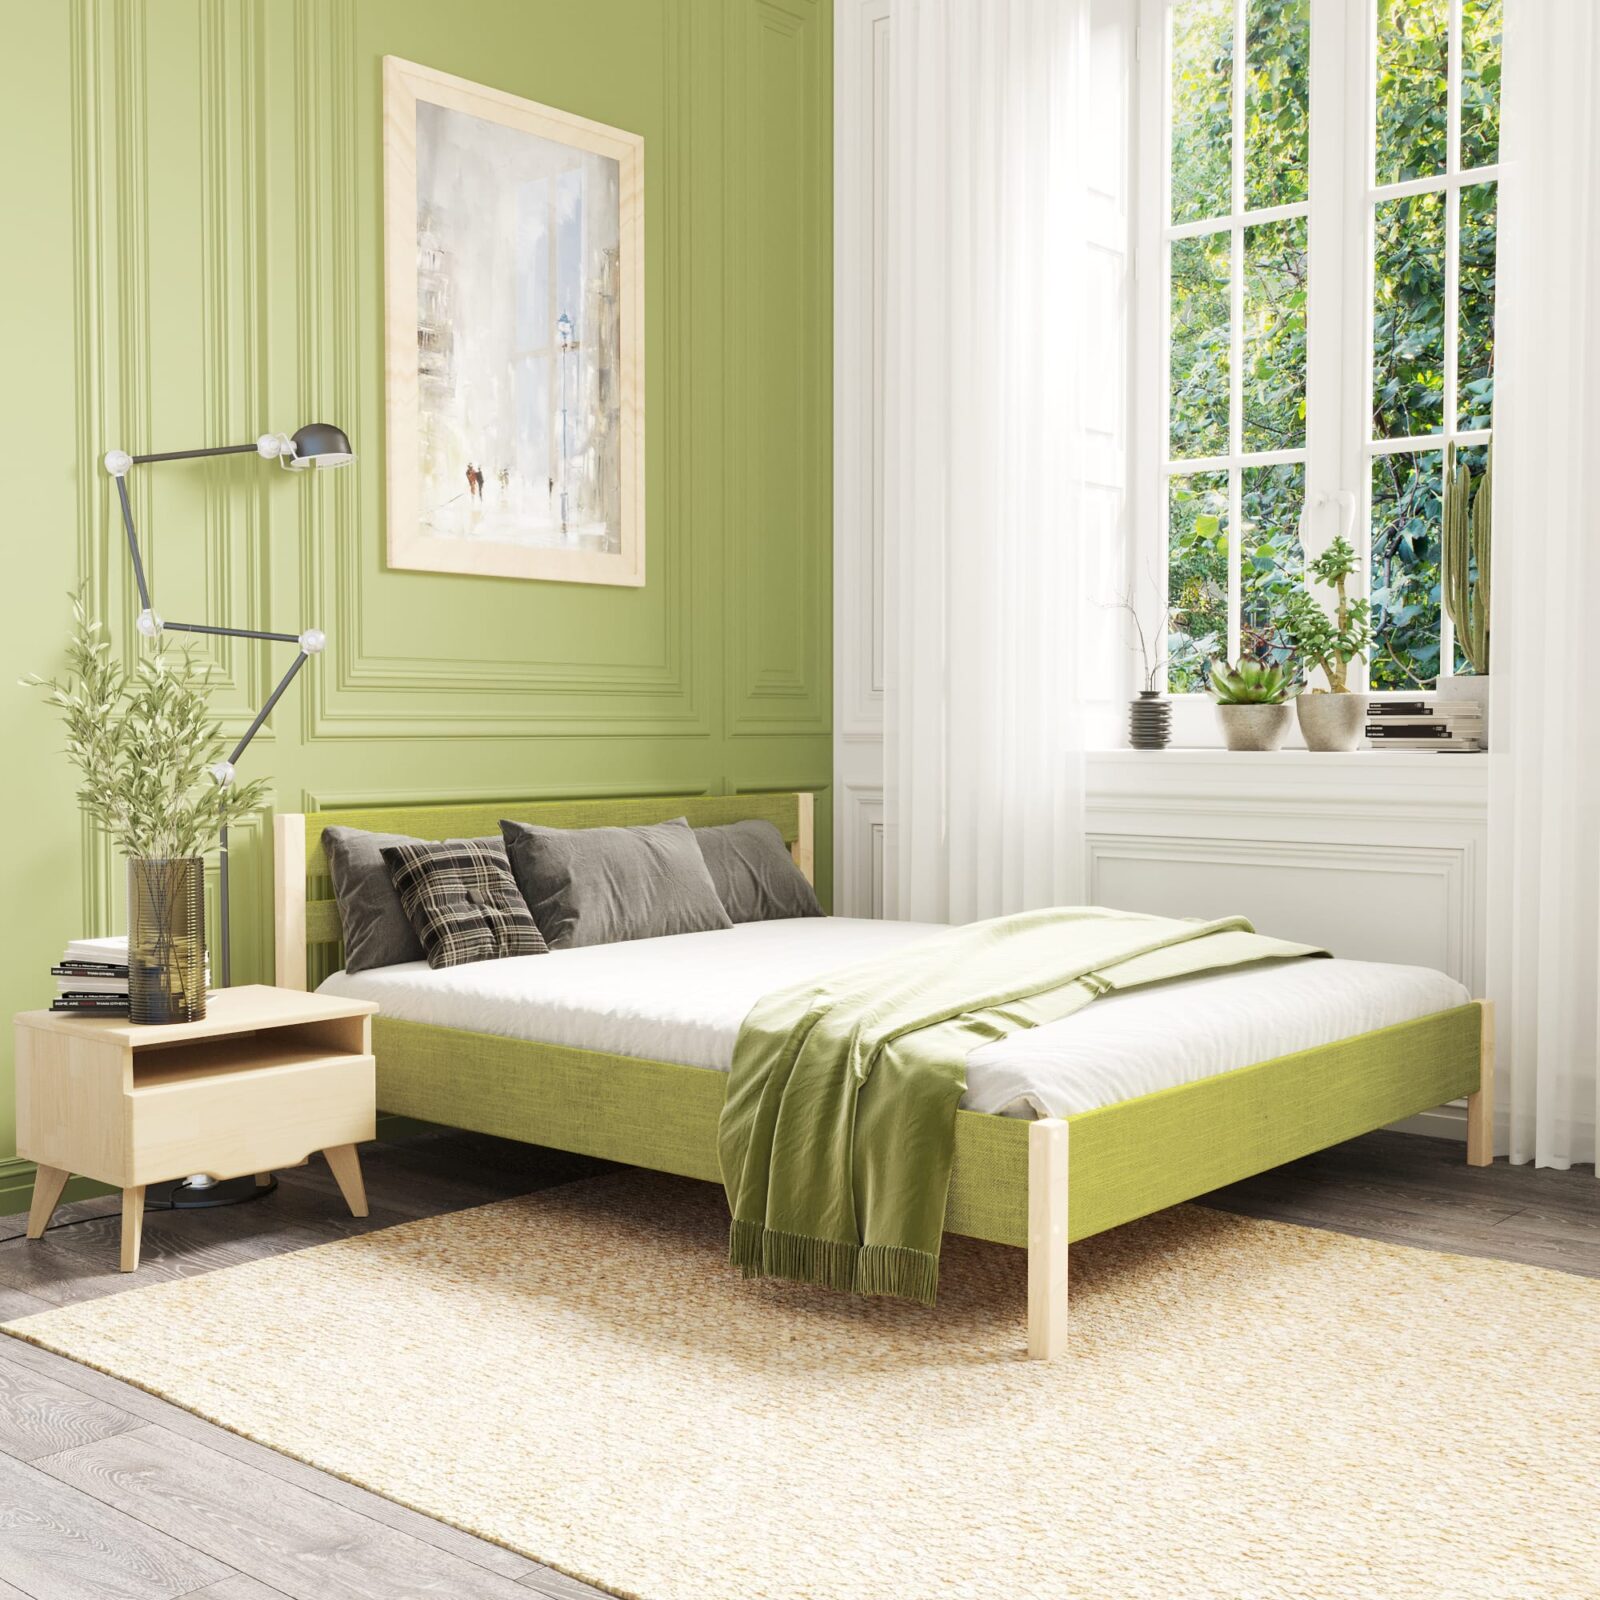 двуспальная кровать зеленого цвета